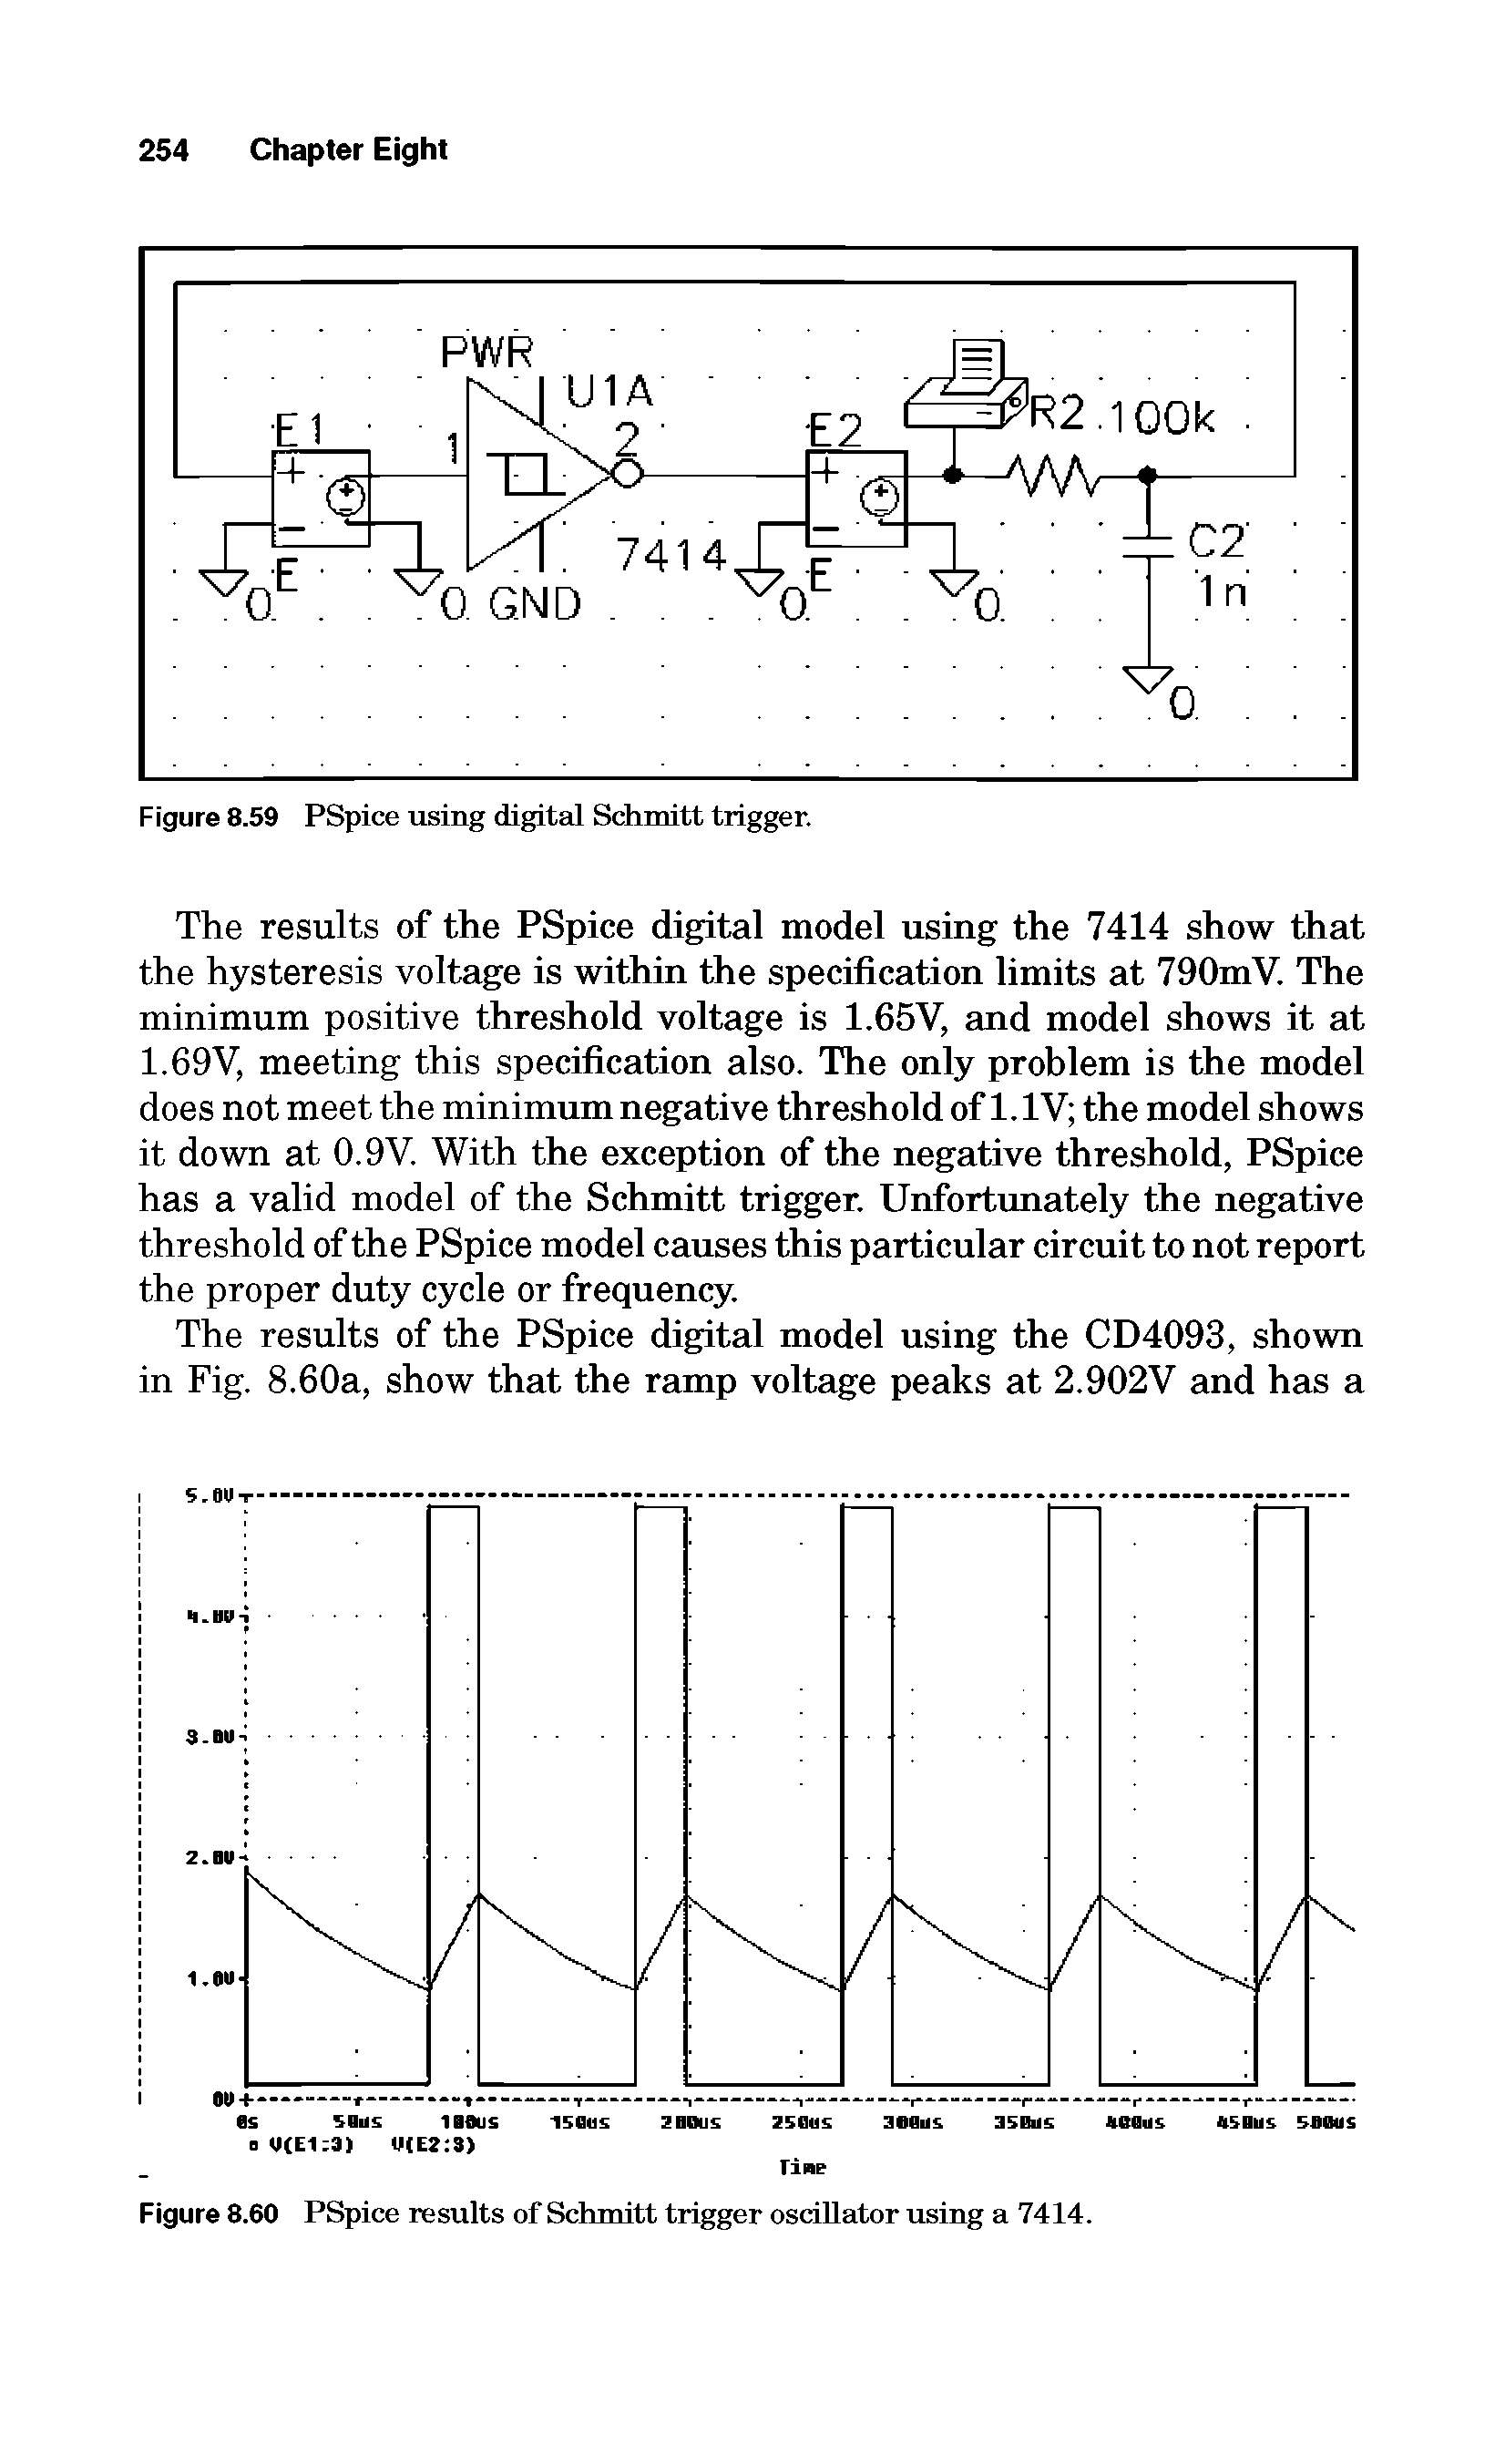 Figure 8.60 PSpice results of Schmitt trigger oscillator using a 7414.